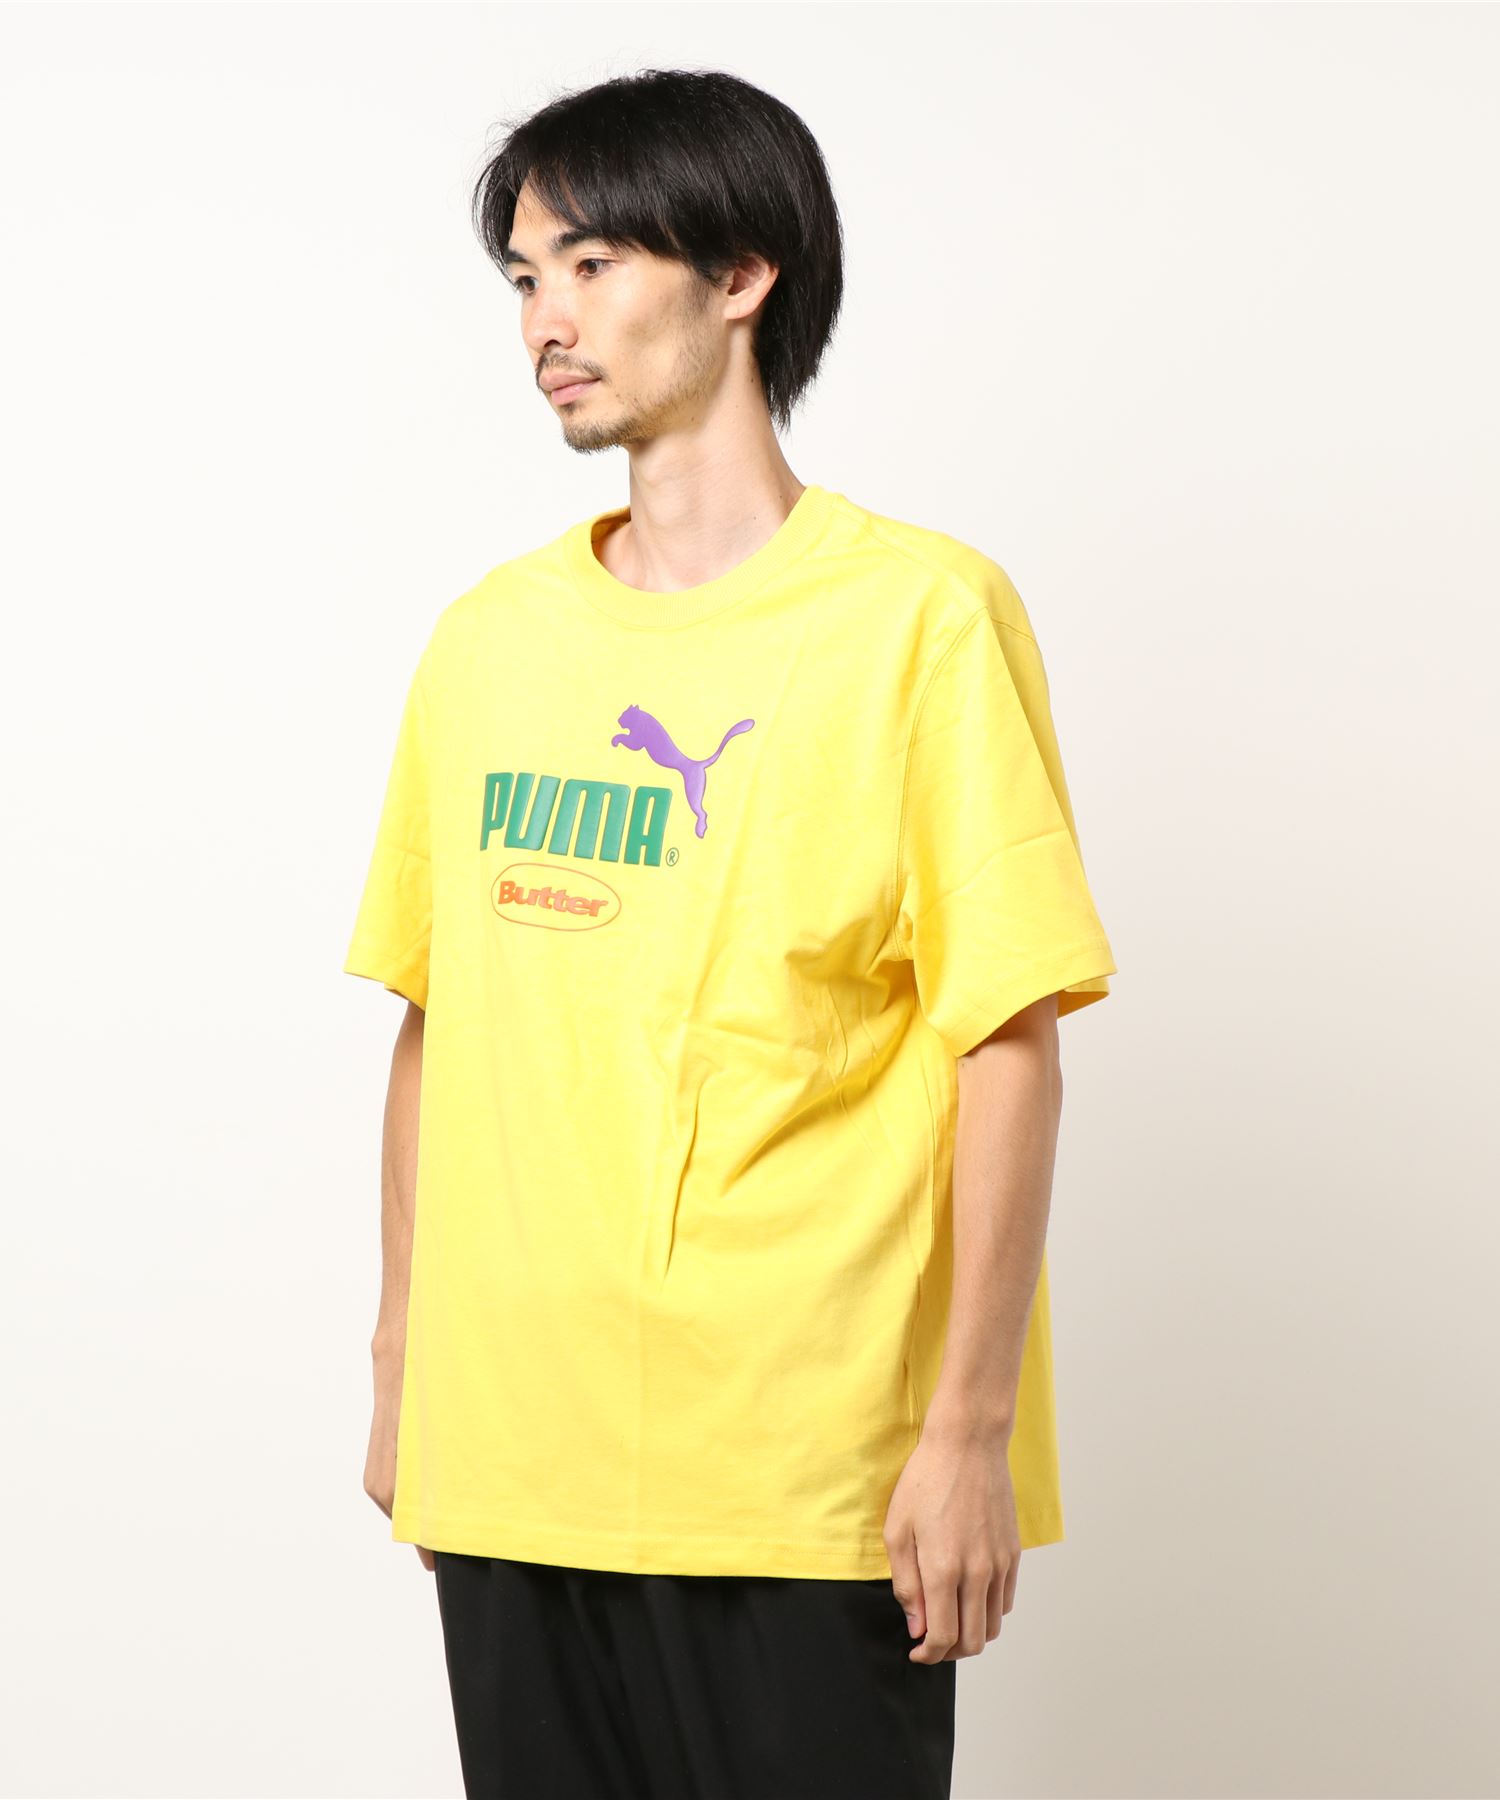 PUMAPUMA プーマ 注目ショップ・ブランドのギフト PUMA x BUTTER ユニセックス GOODS Tシャツ 5周年記念イベントが グラフィック